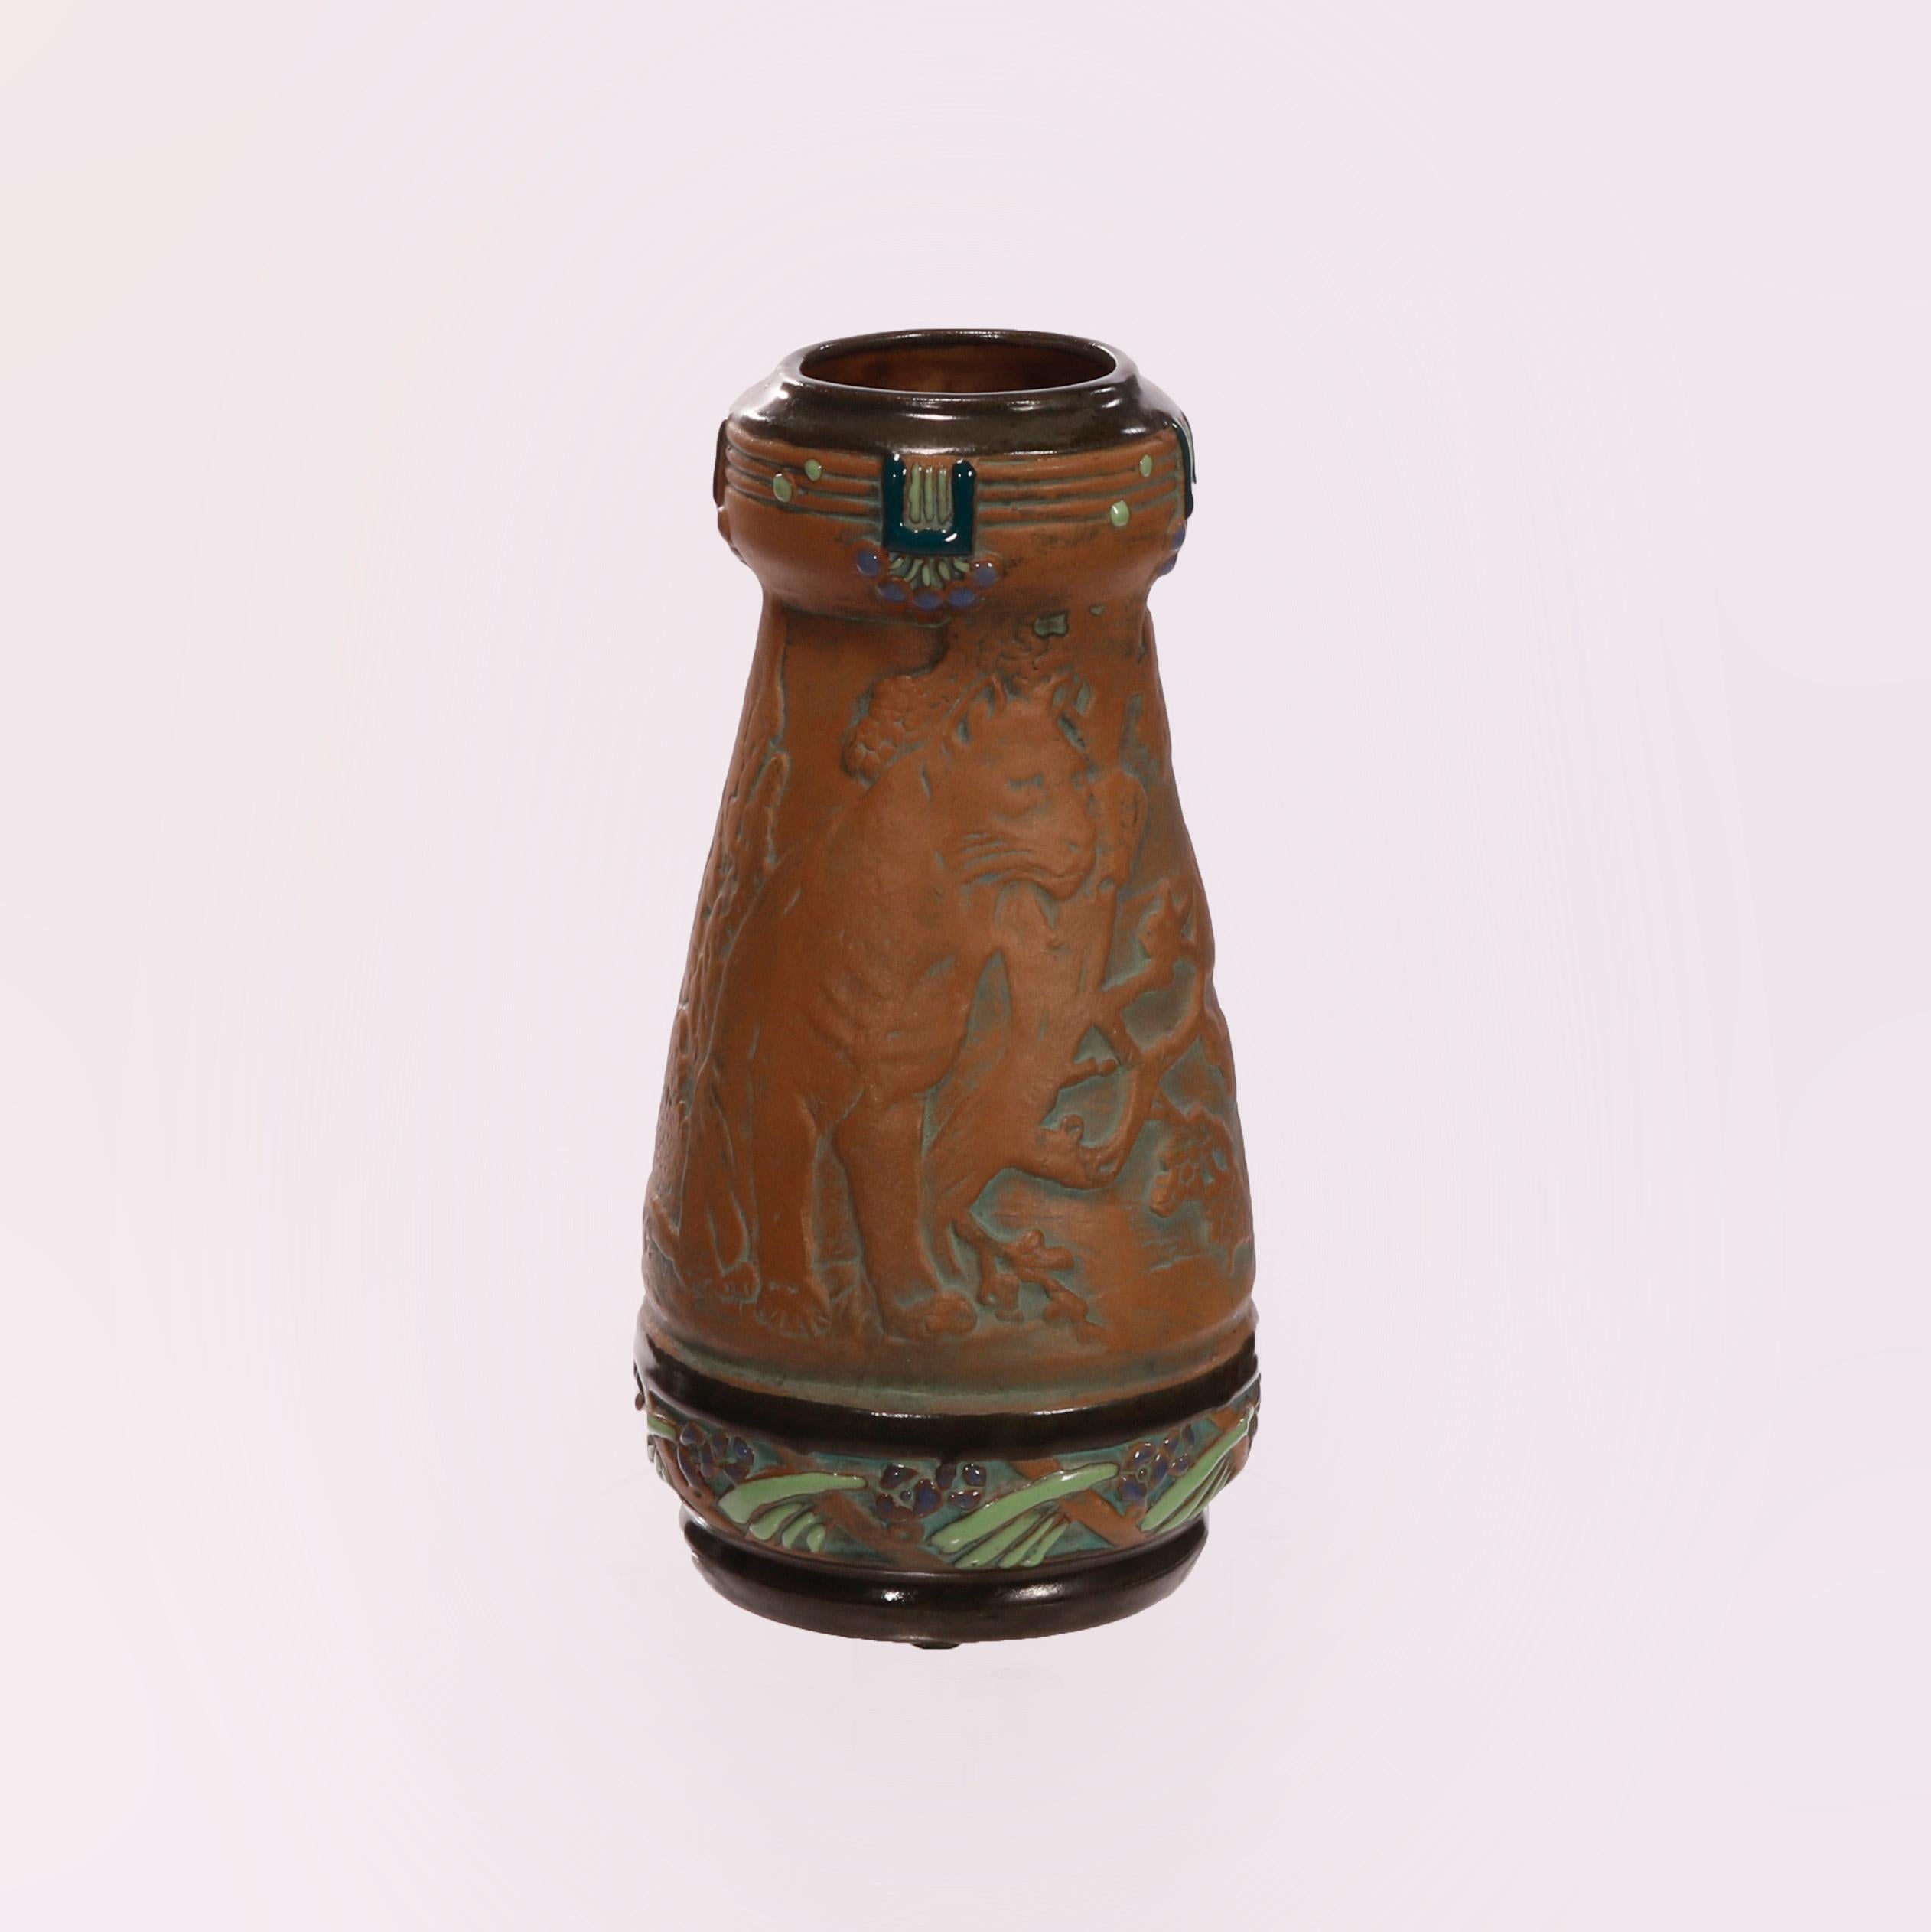 Un vase antique Arts & Crafts offre une construction en poterie Amphora avec un chat sauvage dans un décor champêtre sculpté en relief, une bande polychromée avec des éléments feuillus stylisés émaillés, marqué sur la base comme photographié,